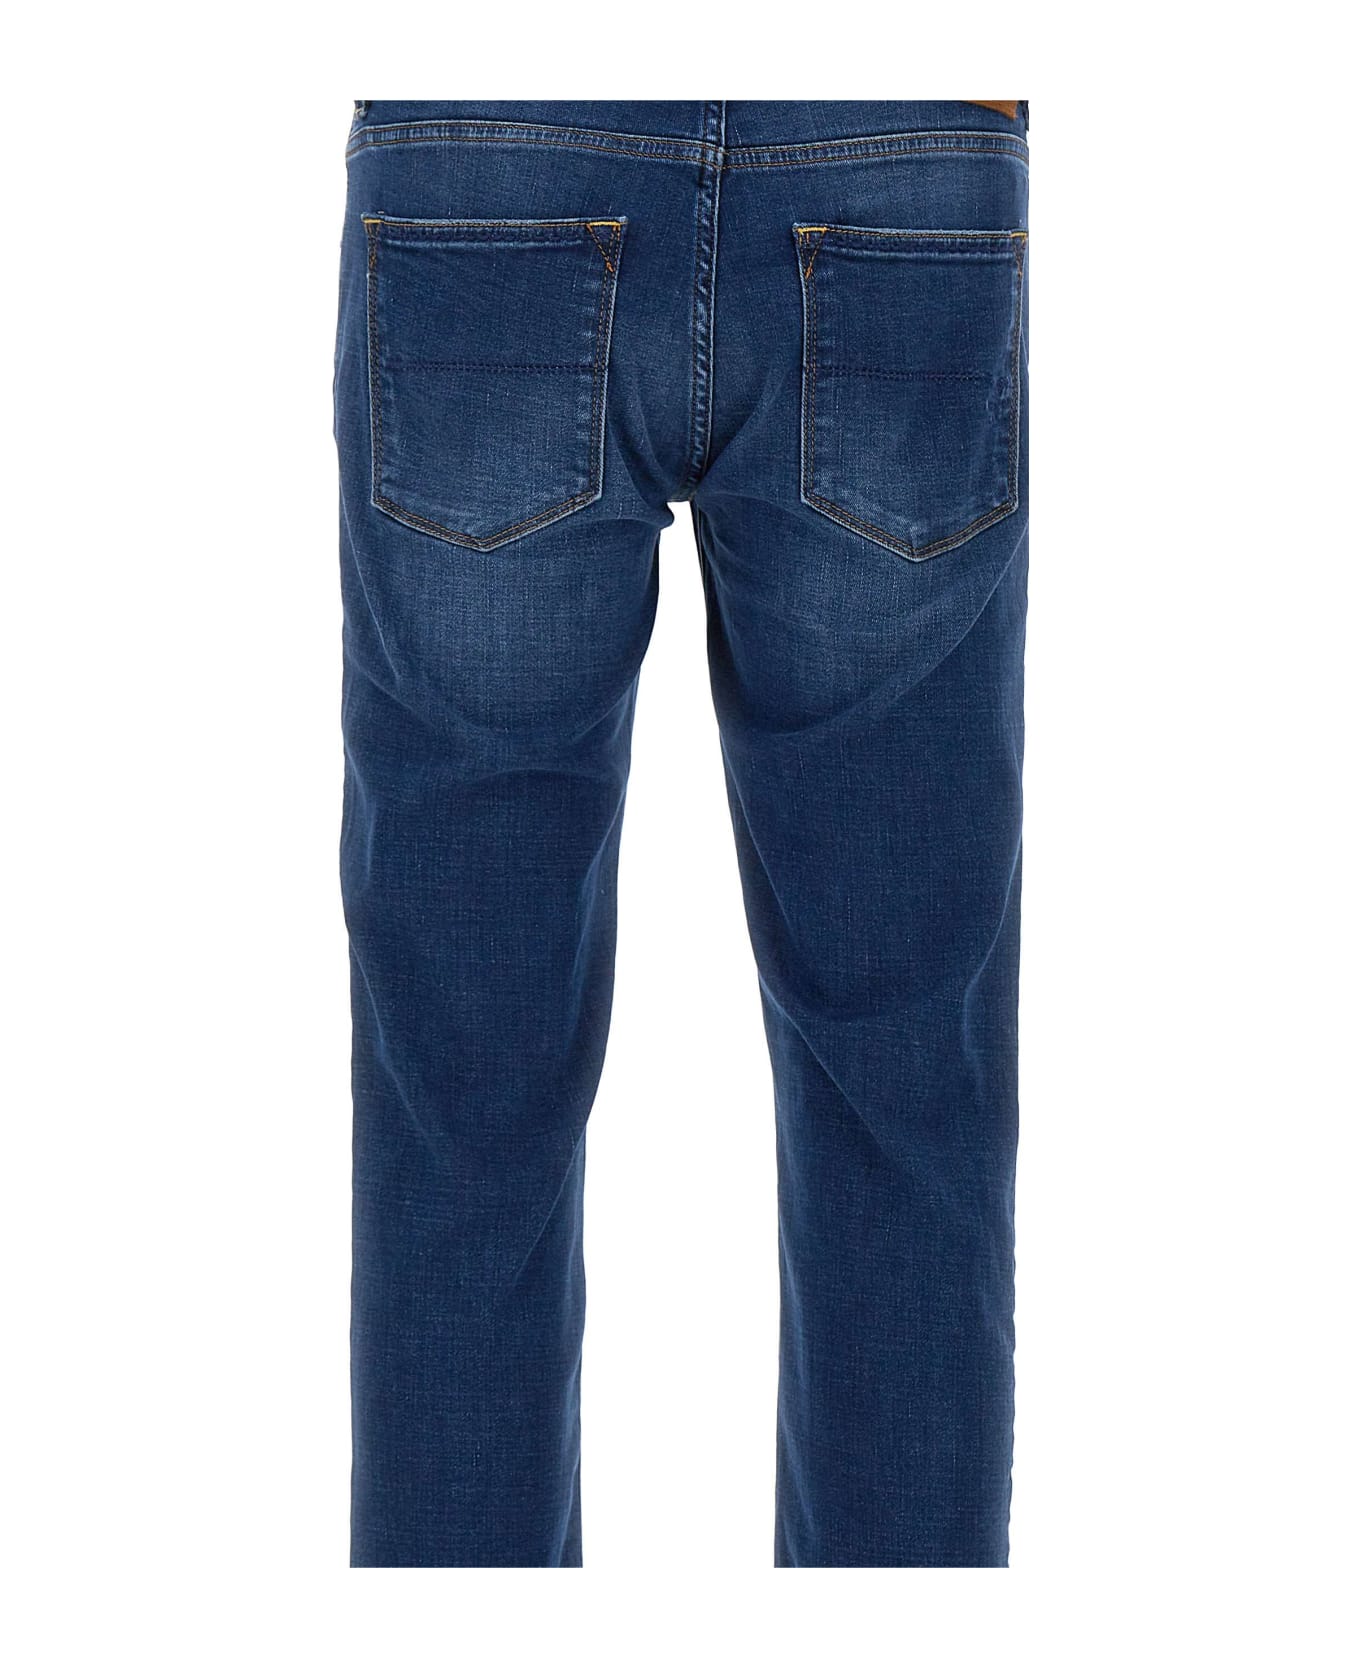 Re-HasH "rubens-z" Jeans - BLUE